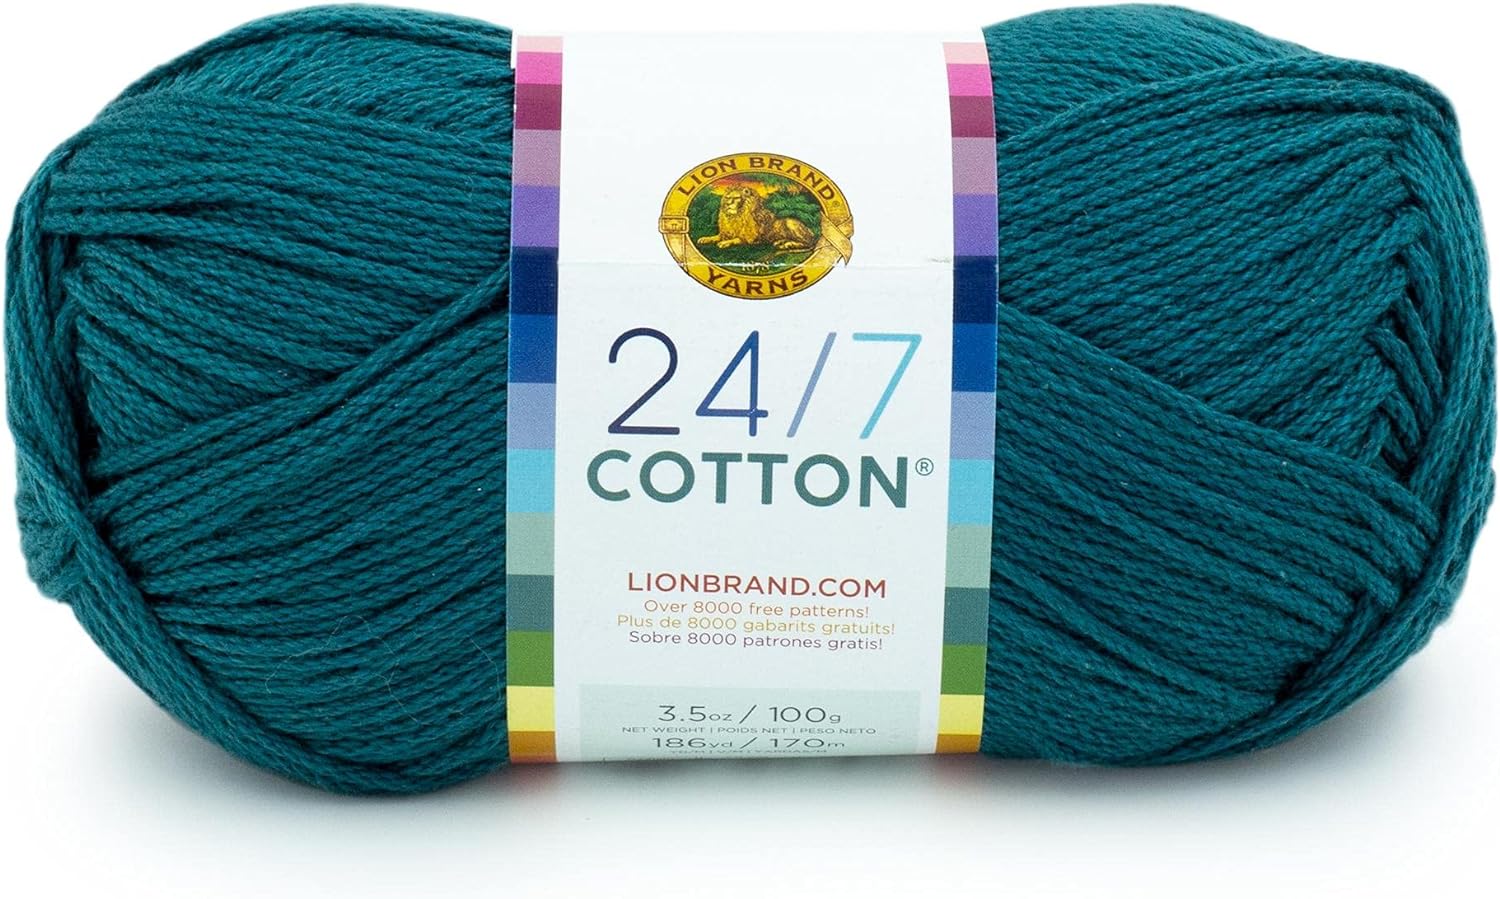 Lion Brand Yarn (1 Skein) 24/7 Cotton Yarn